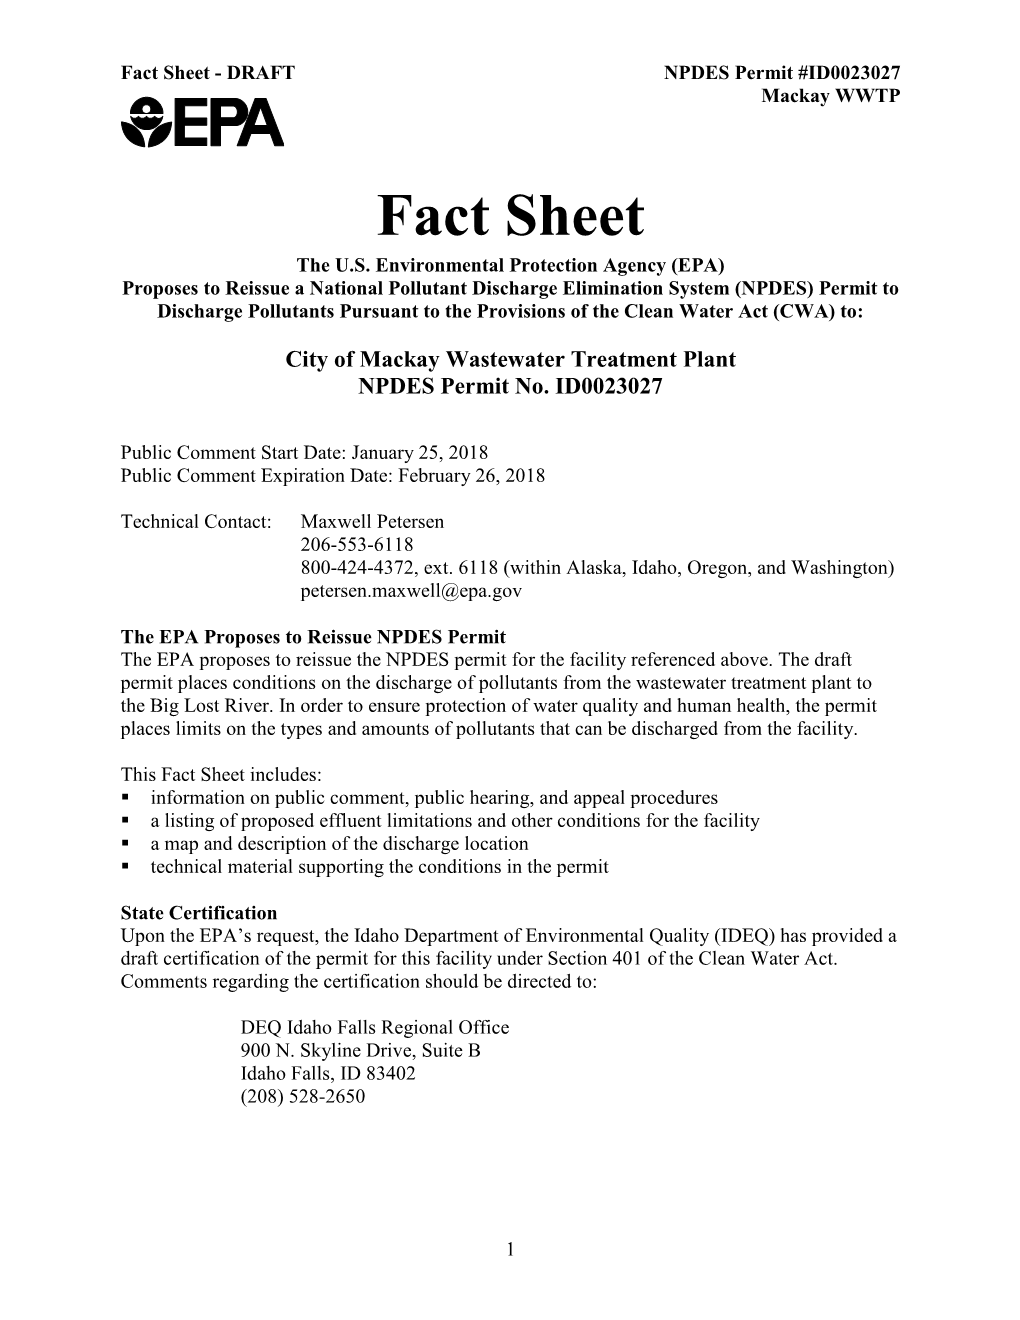 NPDES Permit Fact Sheet, City of Mackay, Idaho, #ID0023027